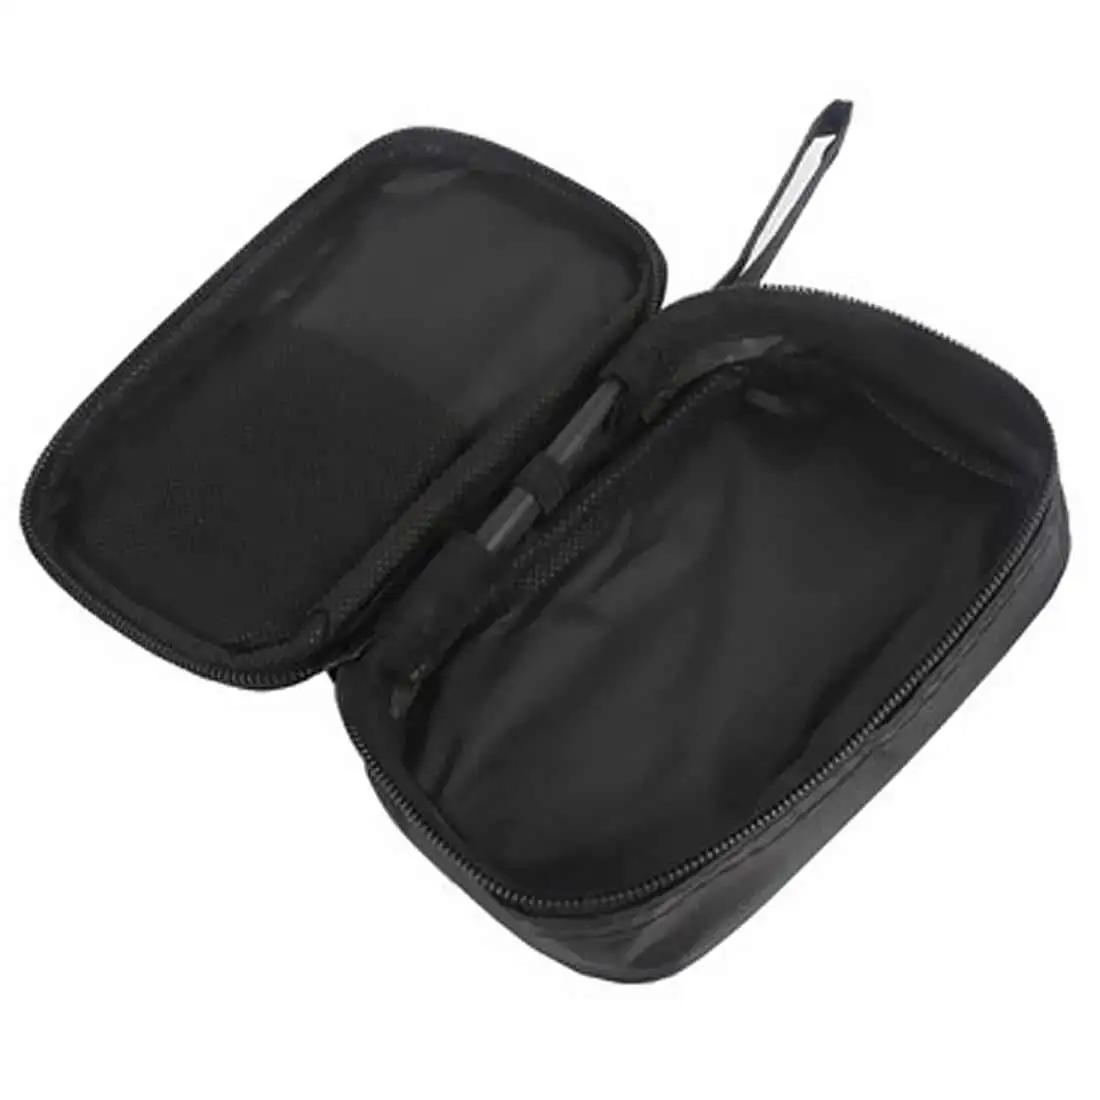 Прочная водонепроницаемая сумка для инструментов мультиметр черная тканевая сумка Прочный водонепроницаемый противоударный мягкий чехол тканевая сумка